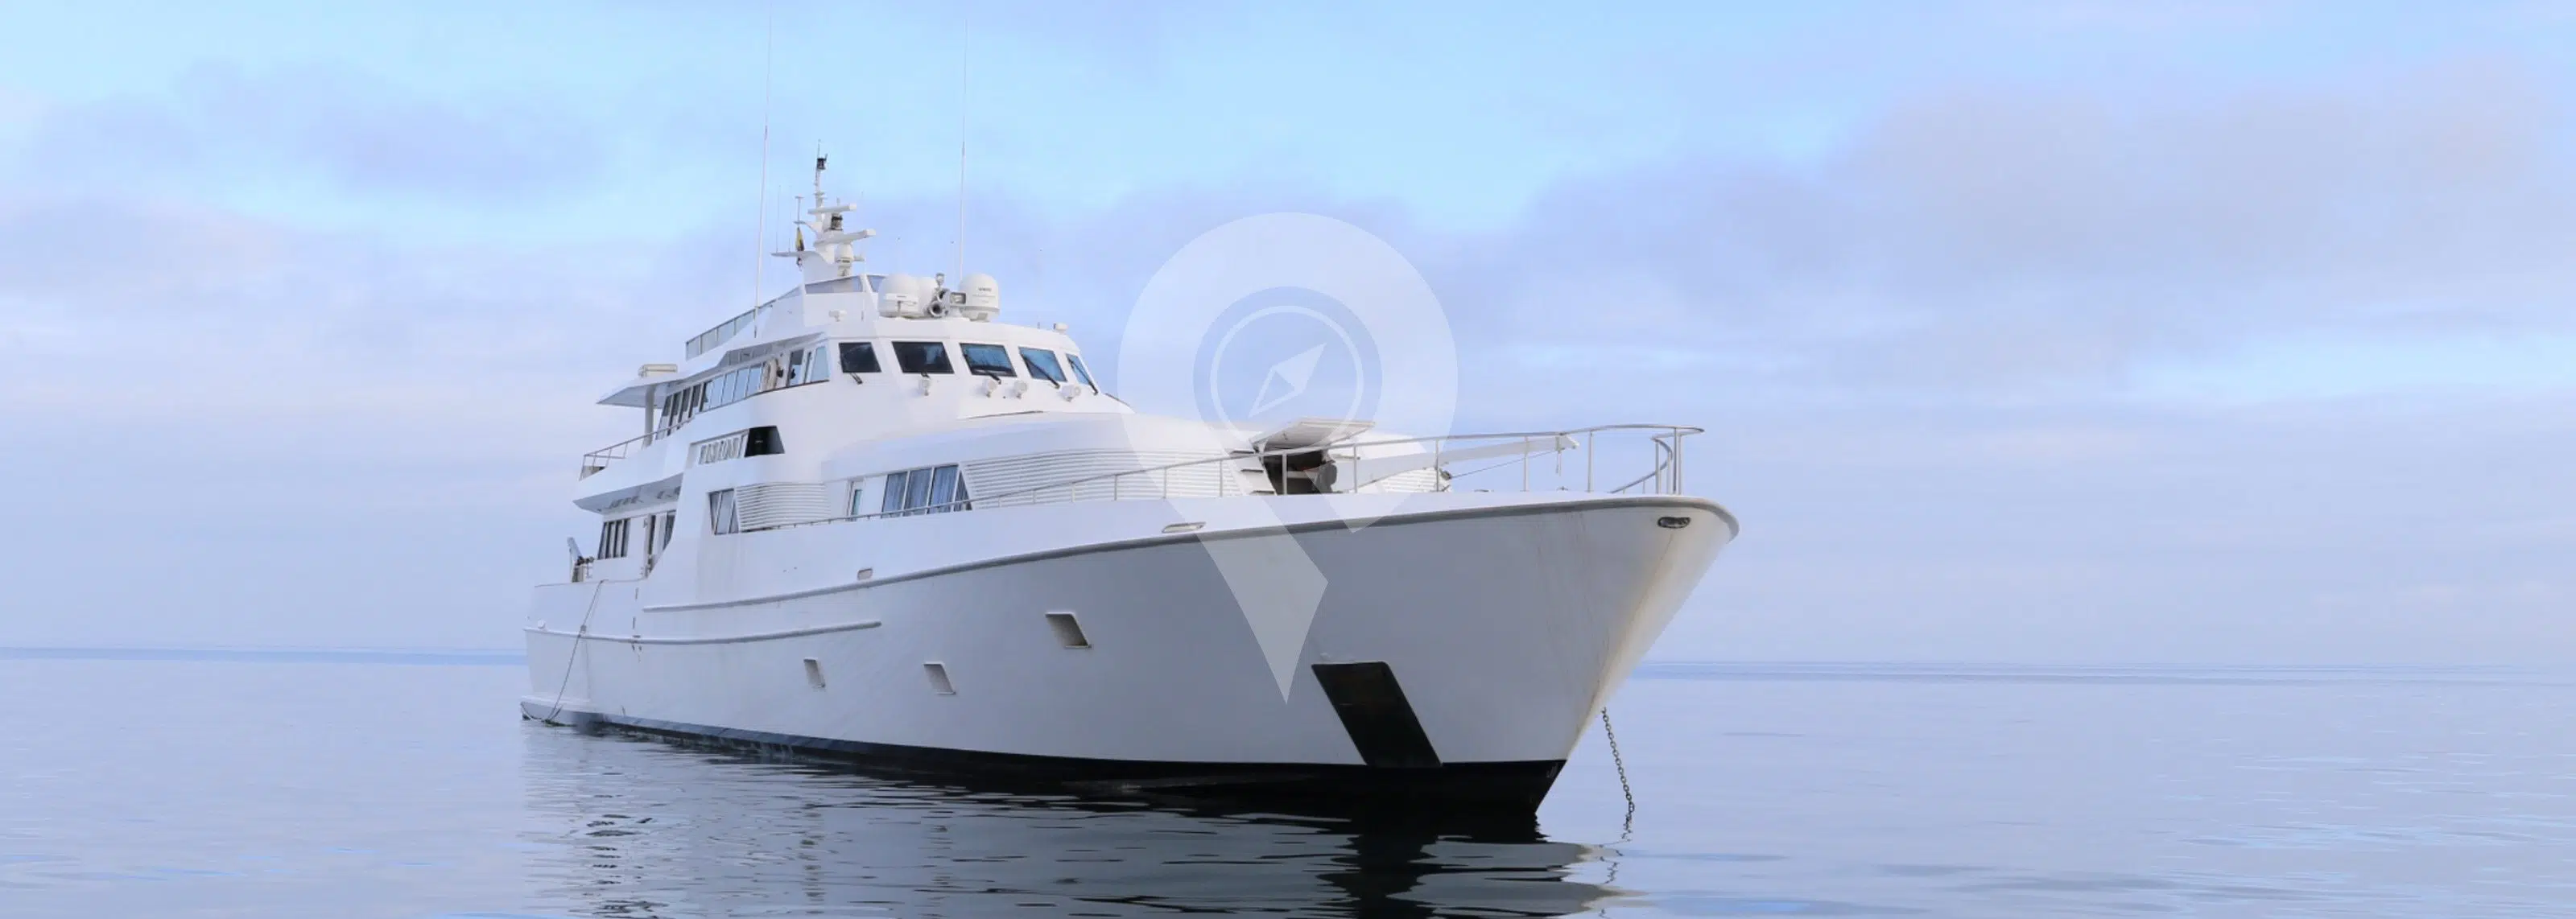 Vision Galapagos Yacht